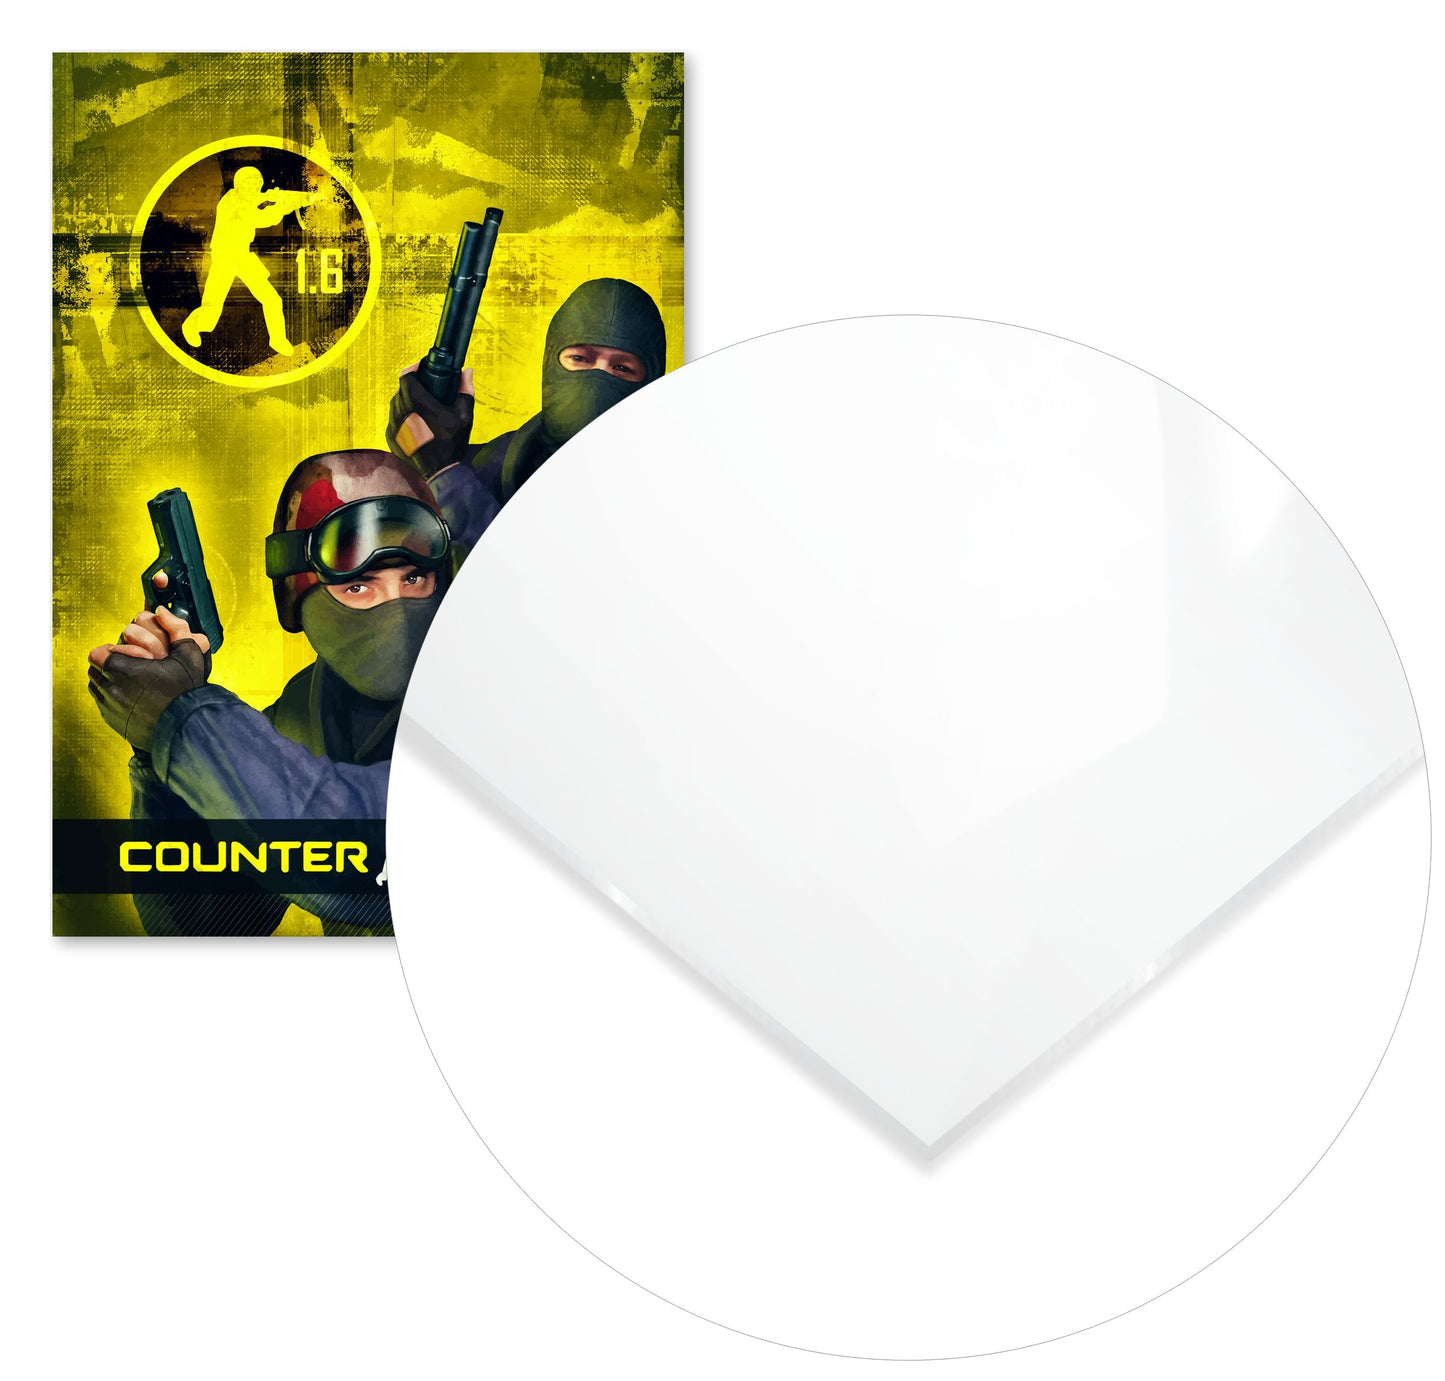 Counter Strike 1.6 retro classic coverart - @SyanArt